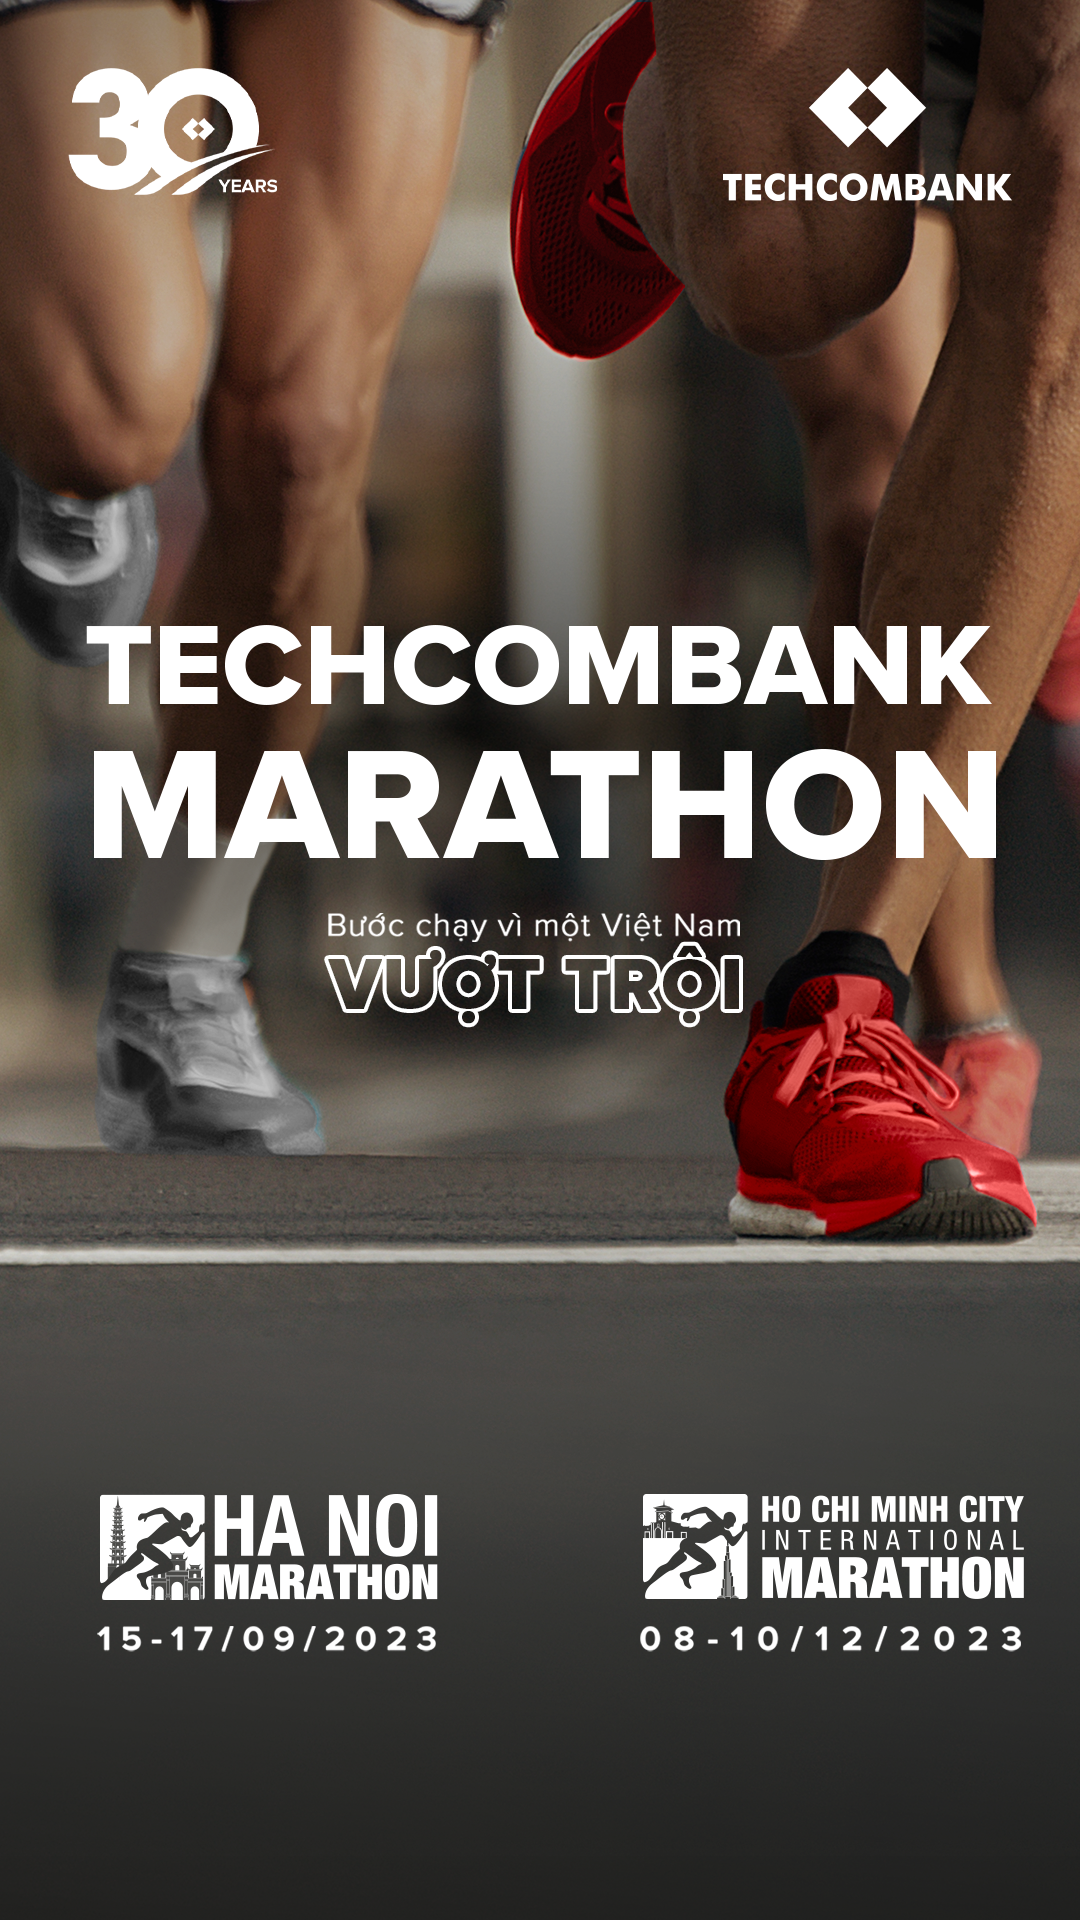 Techcombank kỷ niệm 30 năm thành lập, nâng tầm các sự kiện Marathon tại Hà Nội và Thành phố Hồ Chí Minh - Ảnh 3.